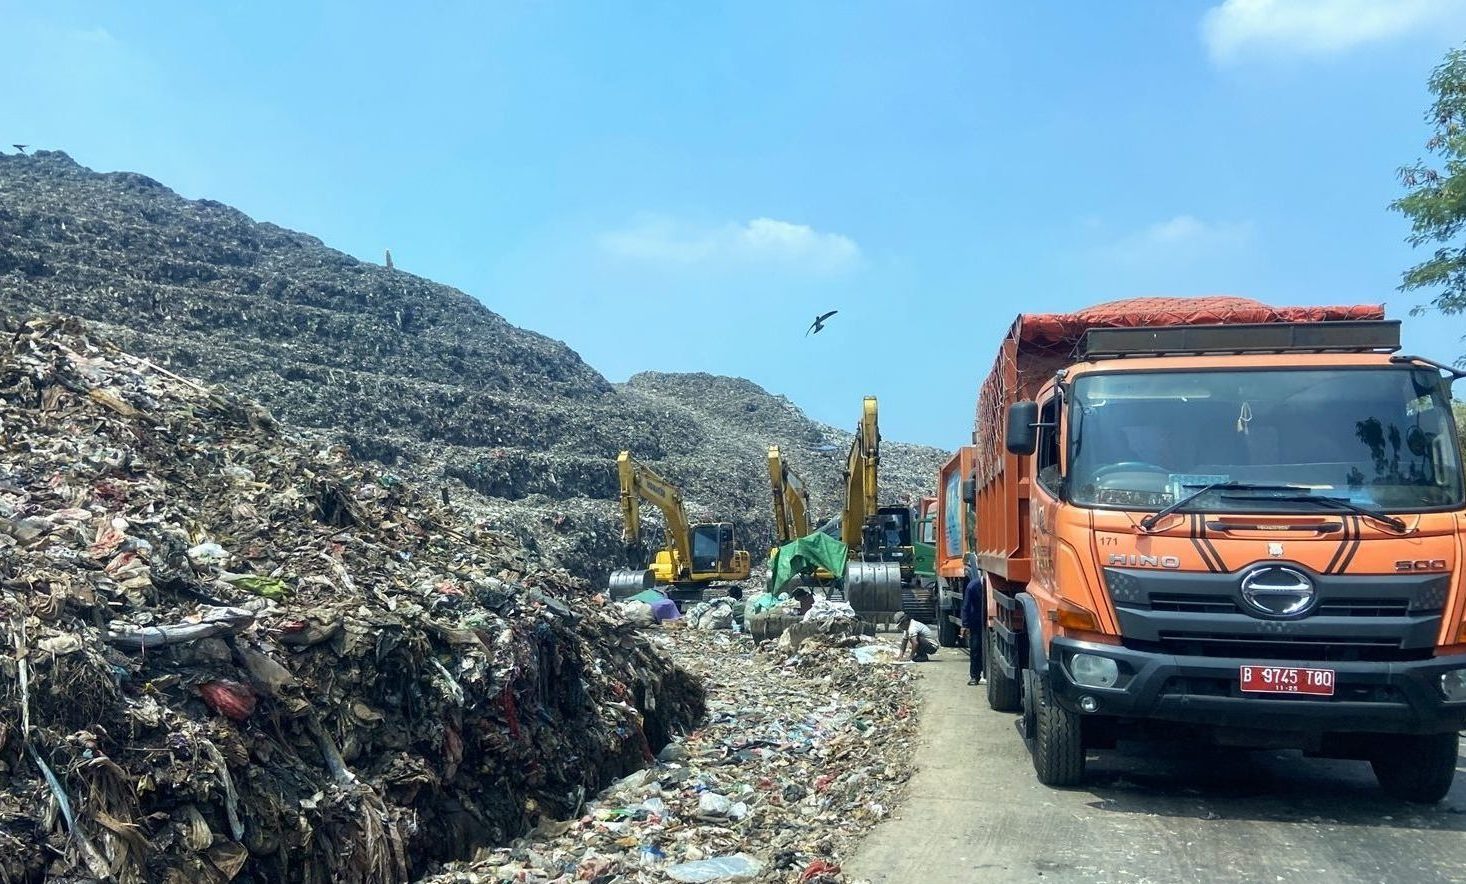 A Walk through Bantar Gebang Landfill: A Closer Look at the Informal Waste Workers